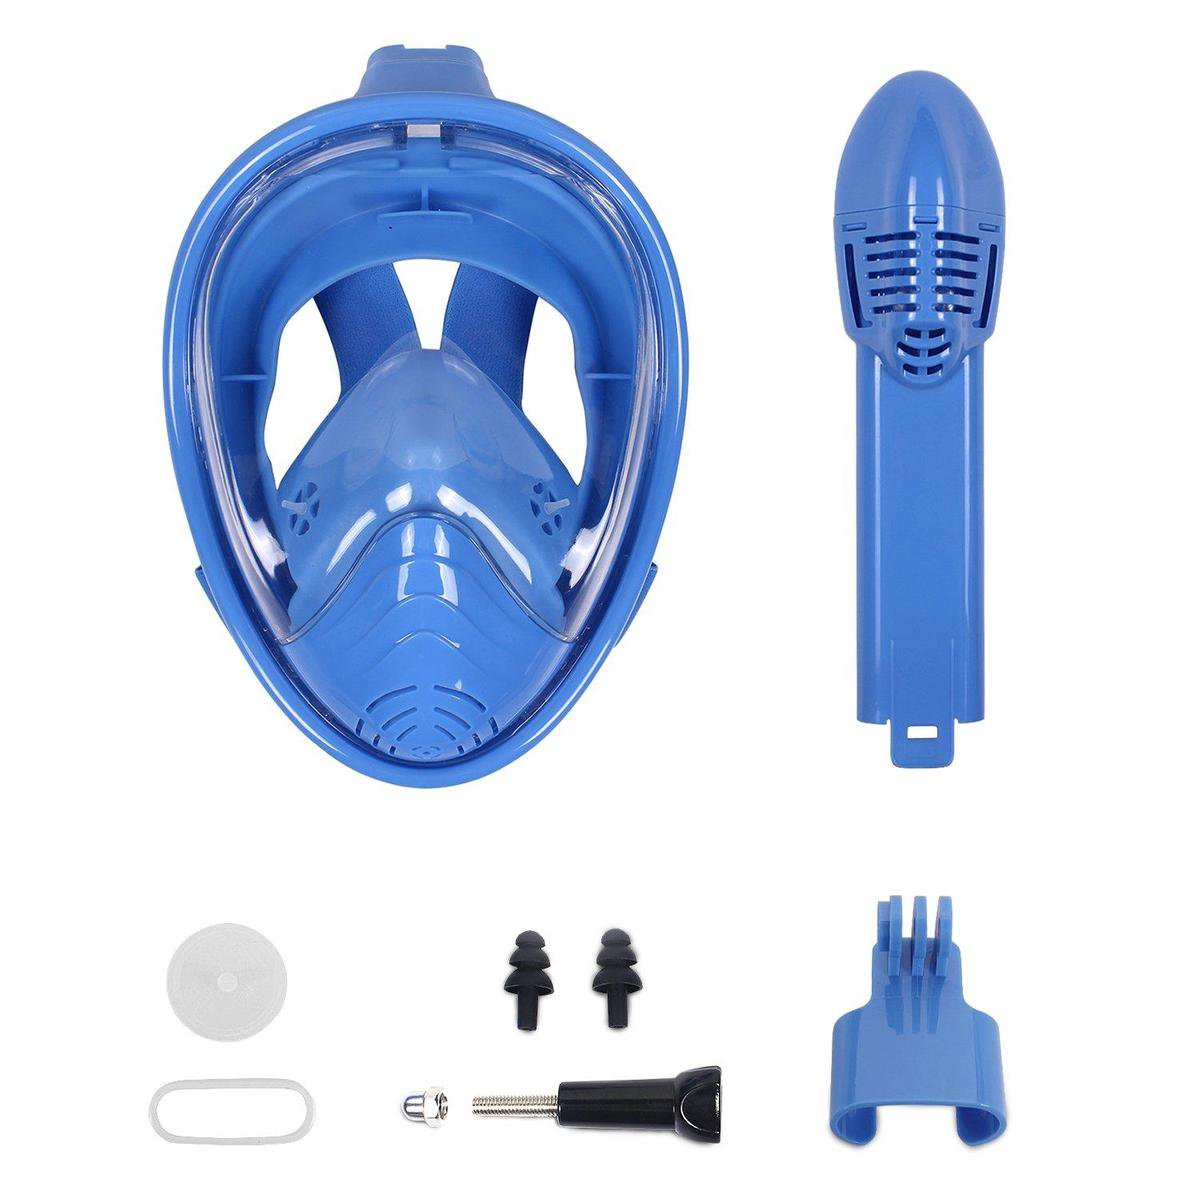 Masque de plongée avec tuba complet Campingwise - Pour ENFANT - Bleu -  Taille XS